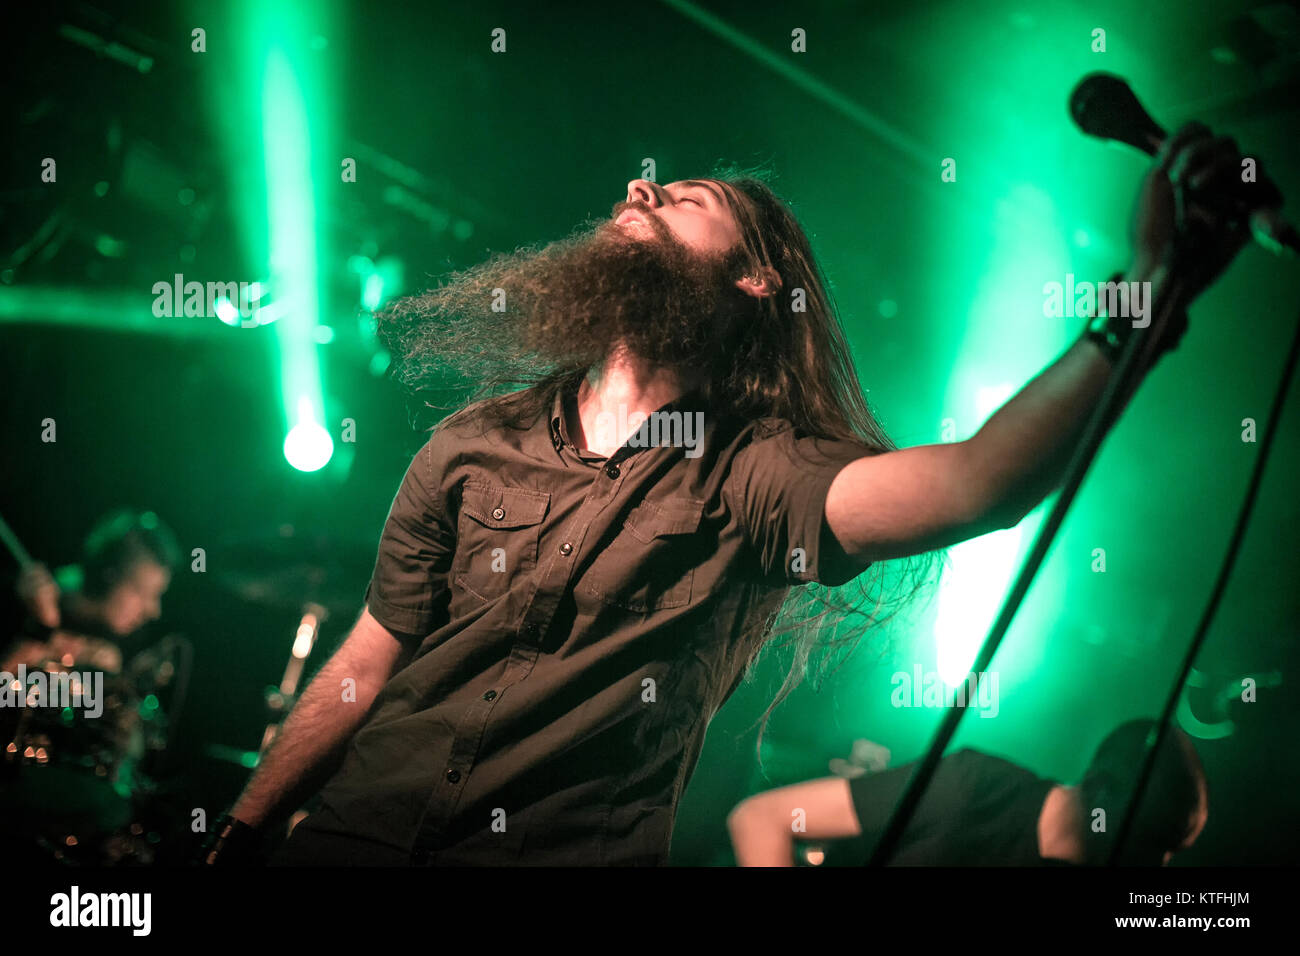 L'Italiano doom metal band rive di Null esegue un concerto dal vivo a John Dee come parte del festival Inferno Metal Festival 2016 a Oslo. Qui la cantante Davide Straccione è visto dal vivo sul palco. Norvegia, 24/03 2016. Foto Stock